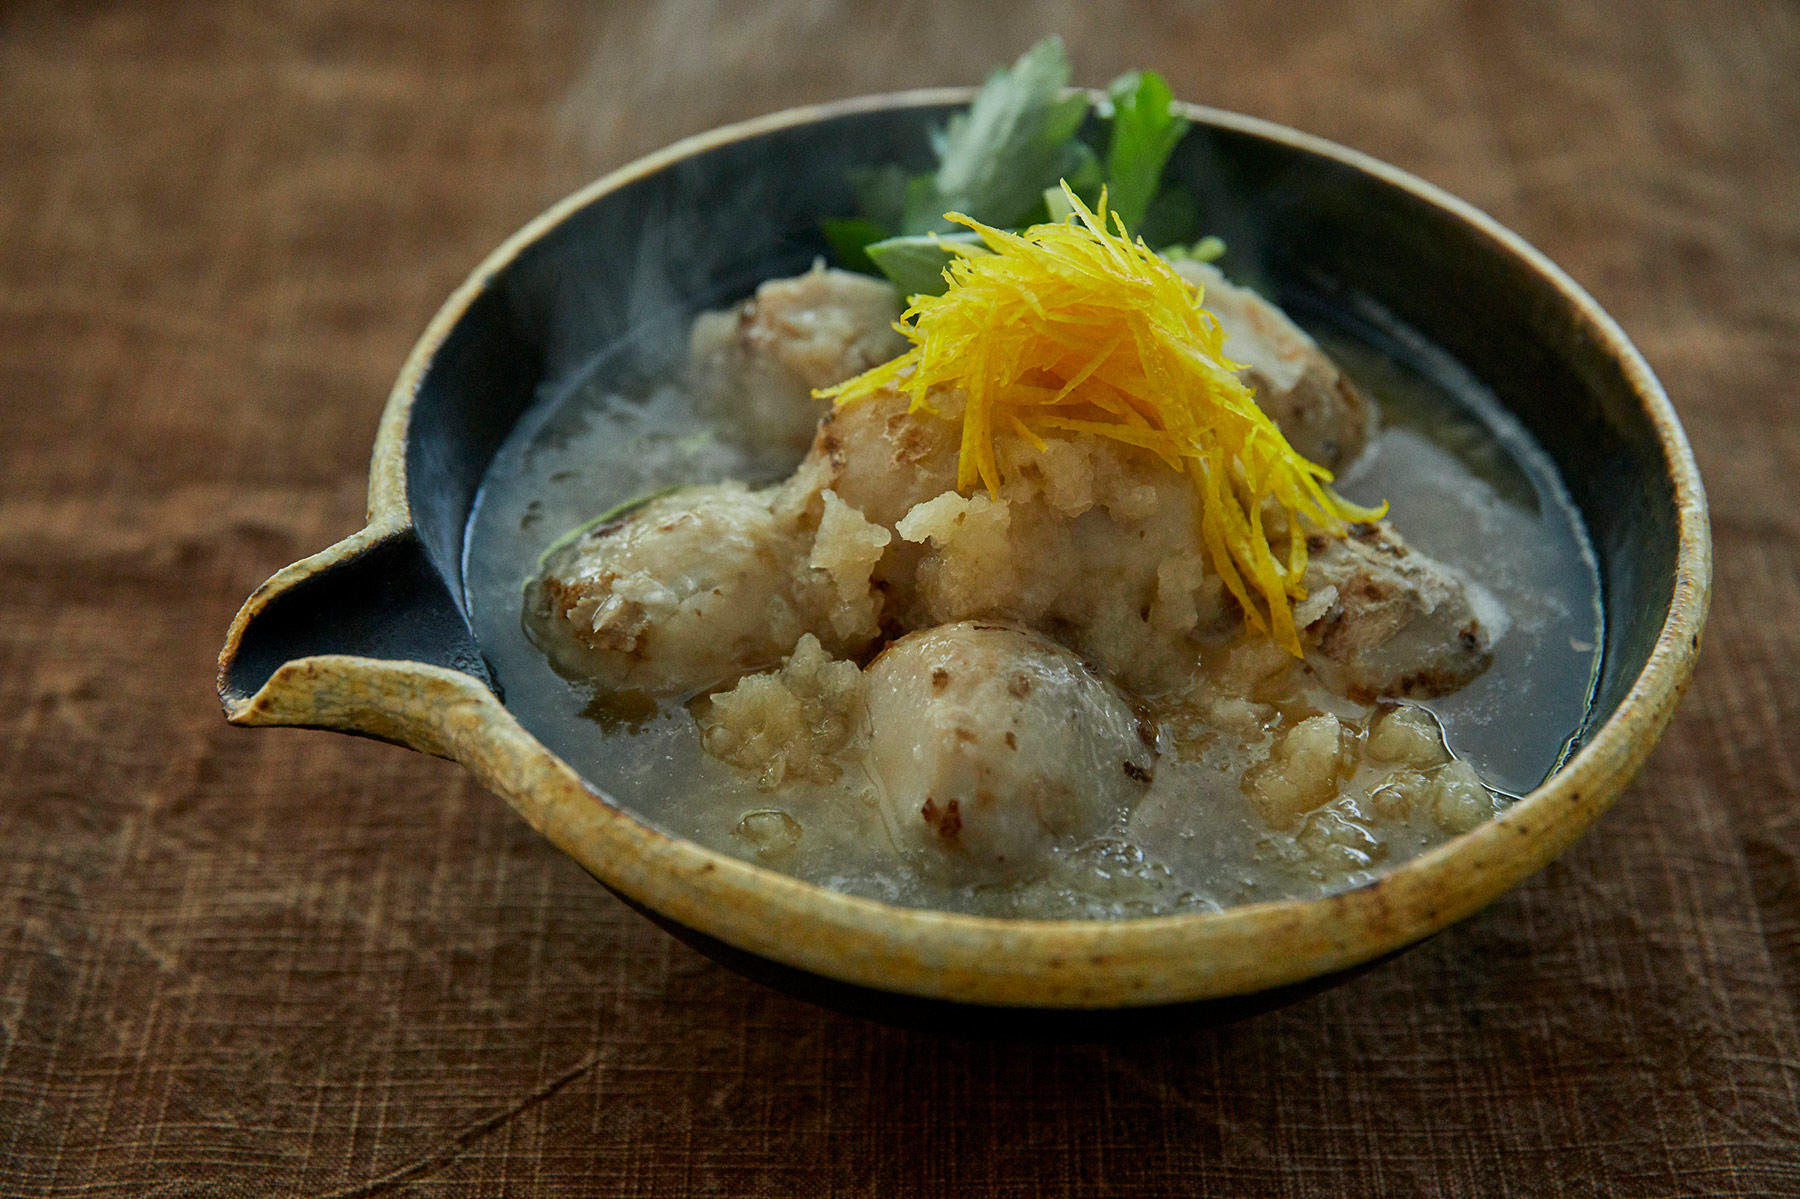 里芋料理の真骨頂 柚子おろし煮 旬の野菜の知恵袋 公式 Dancyu ダンチュウ